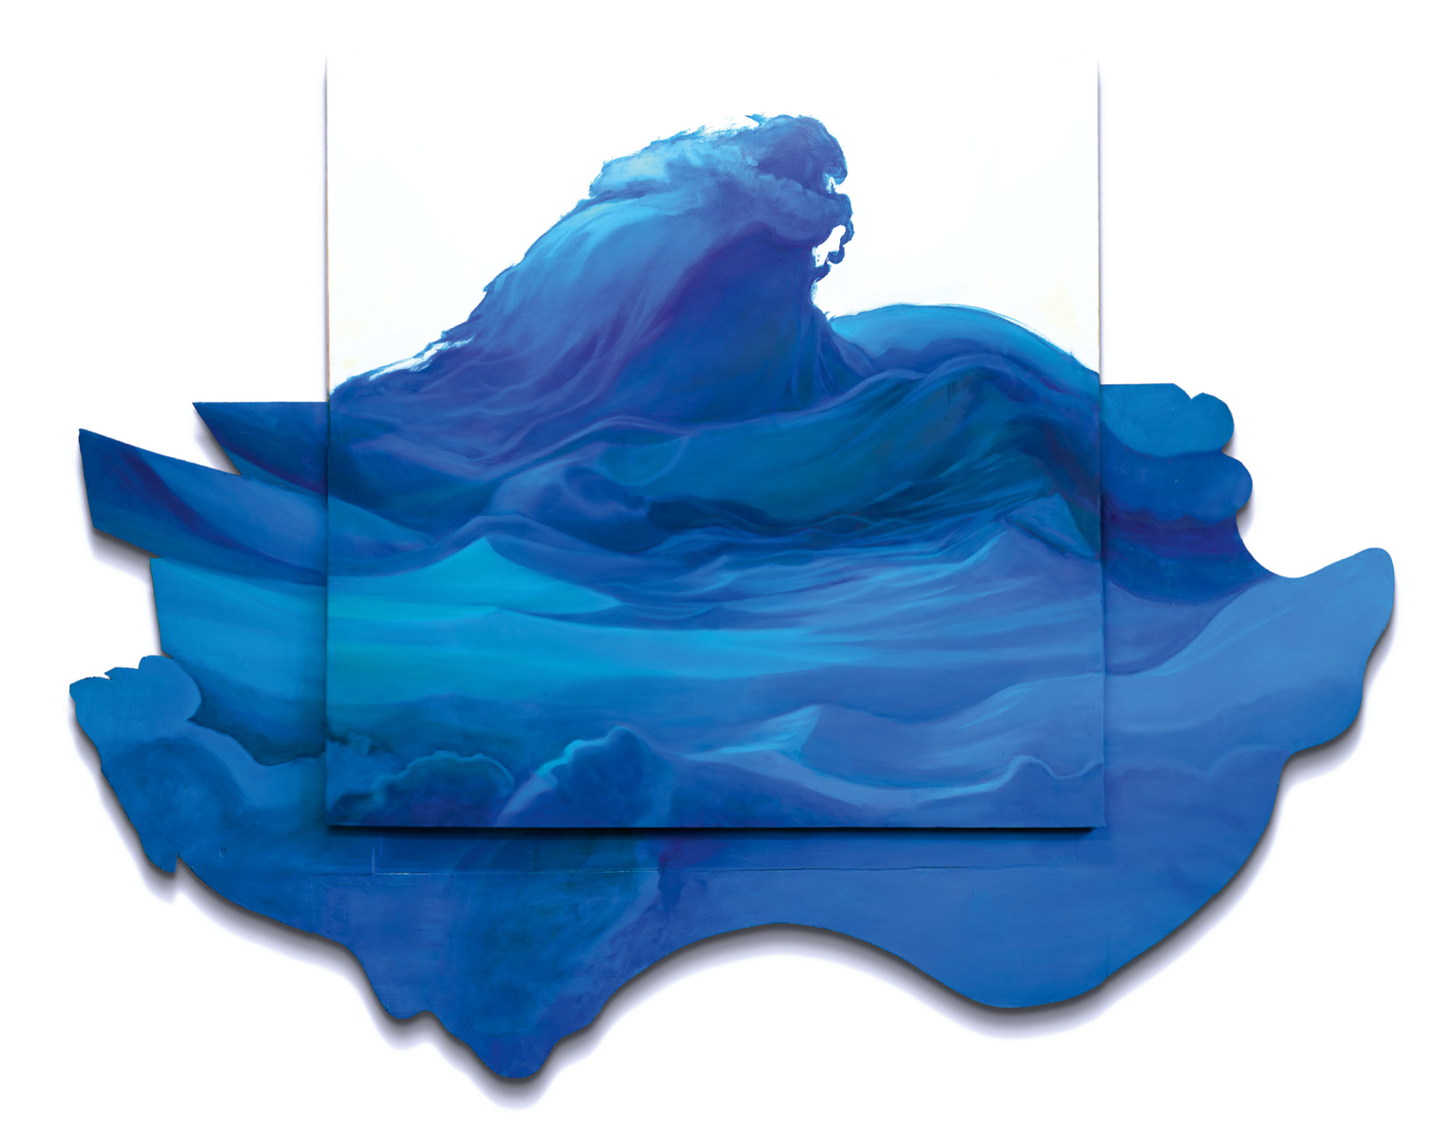 Veiko Klemmer. Sinine hõljuv laine, õli, lõuend, puit, 180 x 260 x 5 cm.